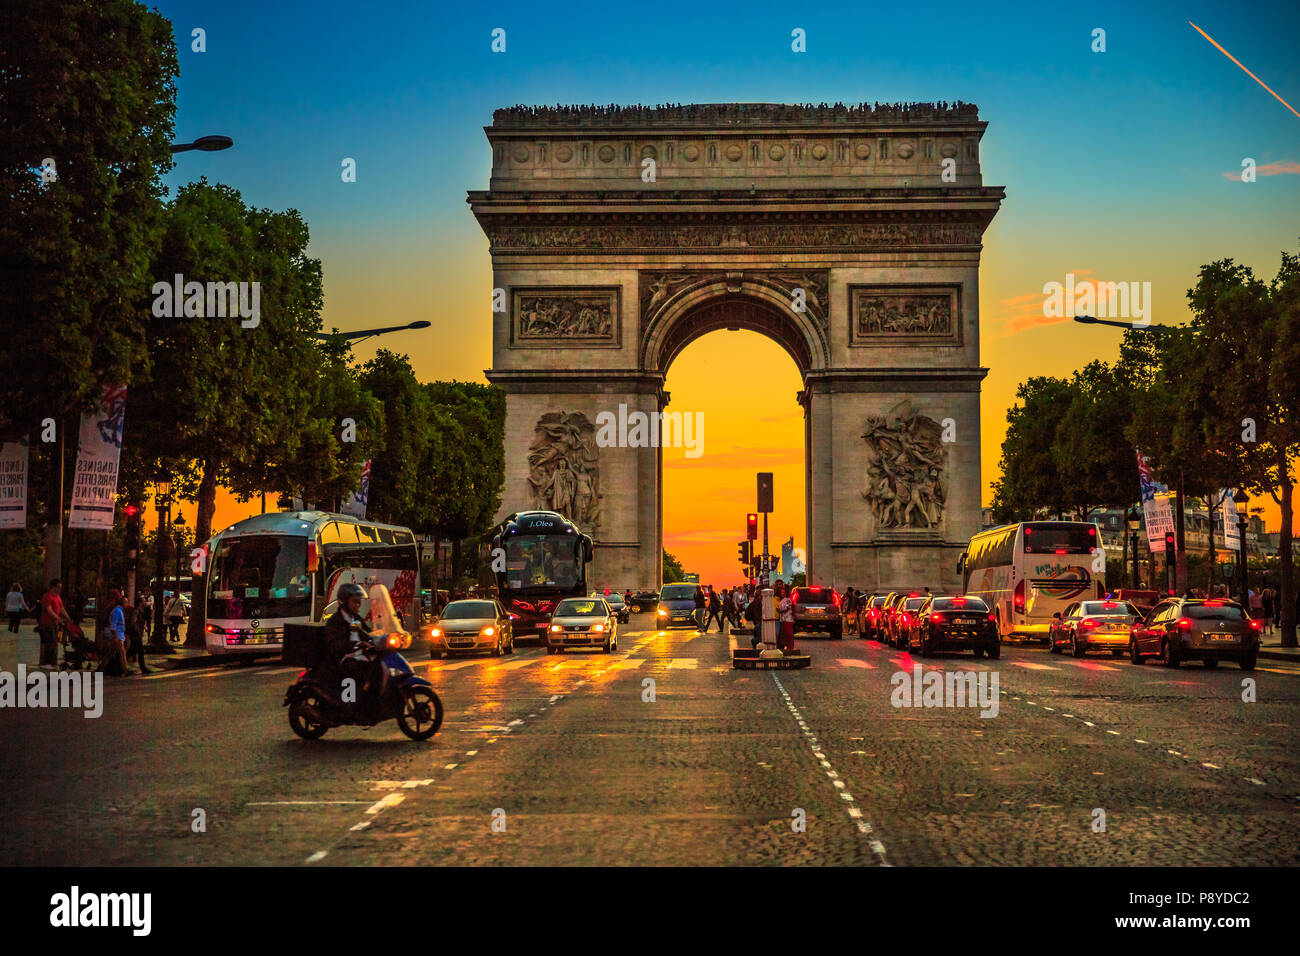 Paris, Frankreich, Juli 2, 2017: Platz an der Champs Elysees Straße und in der Mitte des Place Charles de Gaulle mit Triumphbogen in der Dämmerung mit Verkehr Straße. Arc de Triomphe an der blauen Stunde in Paris. Stockfoto